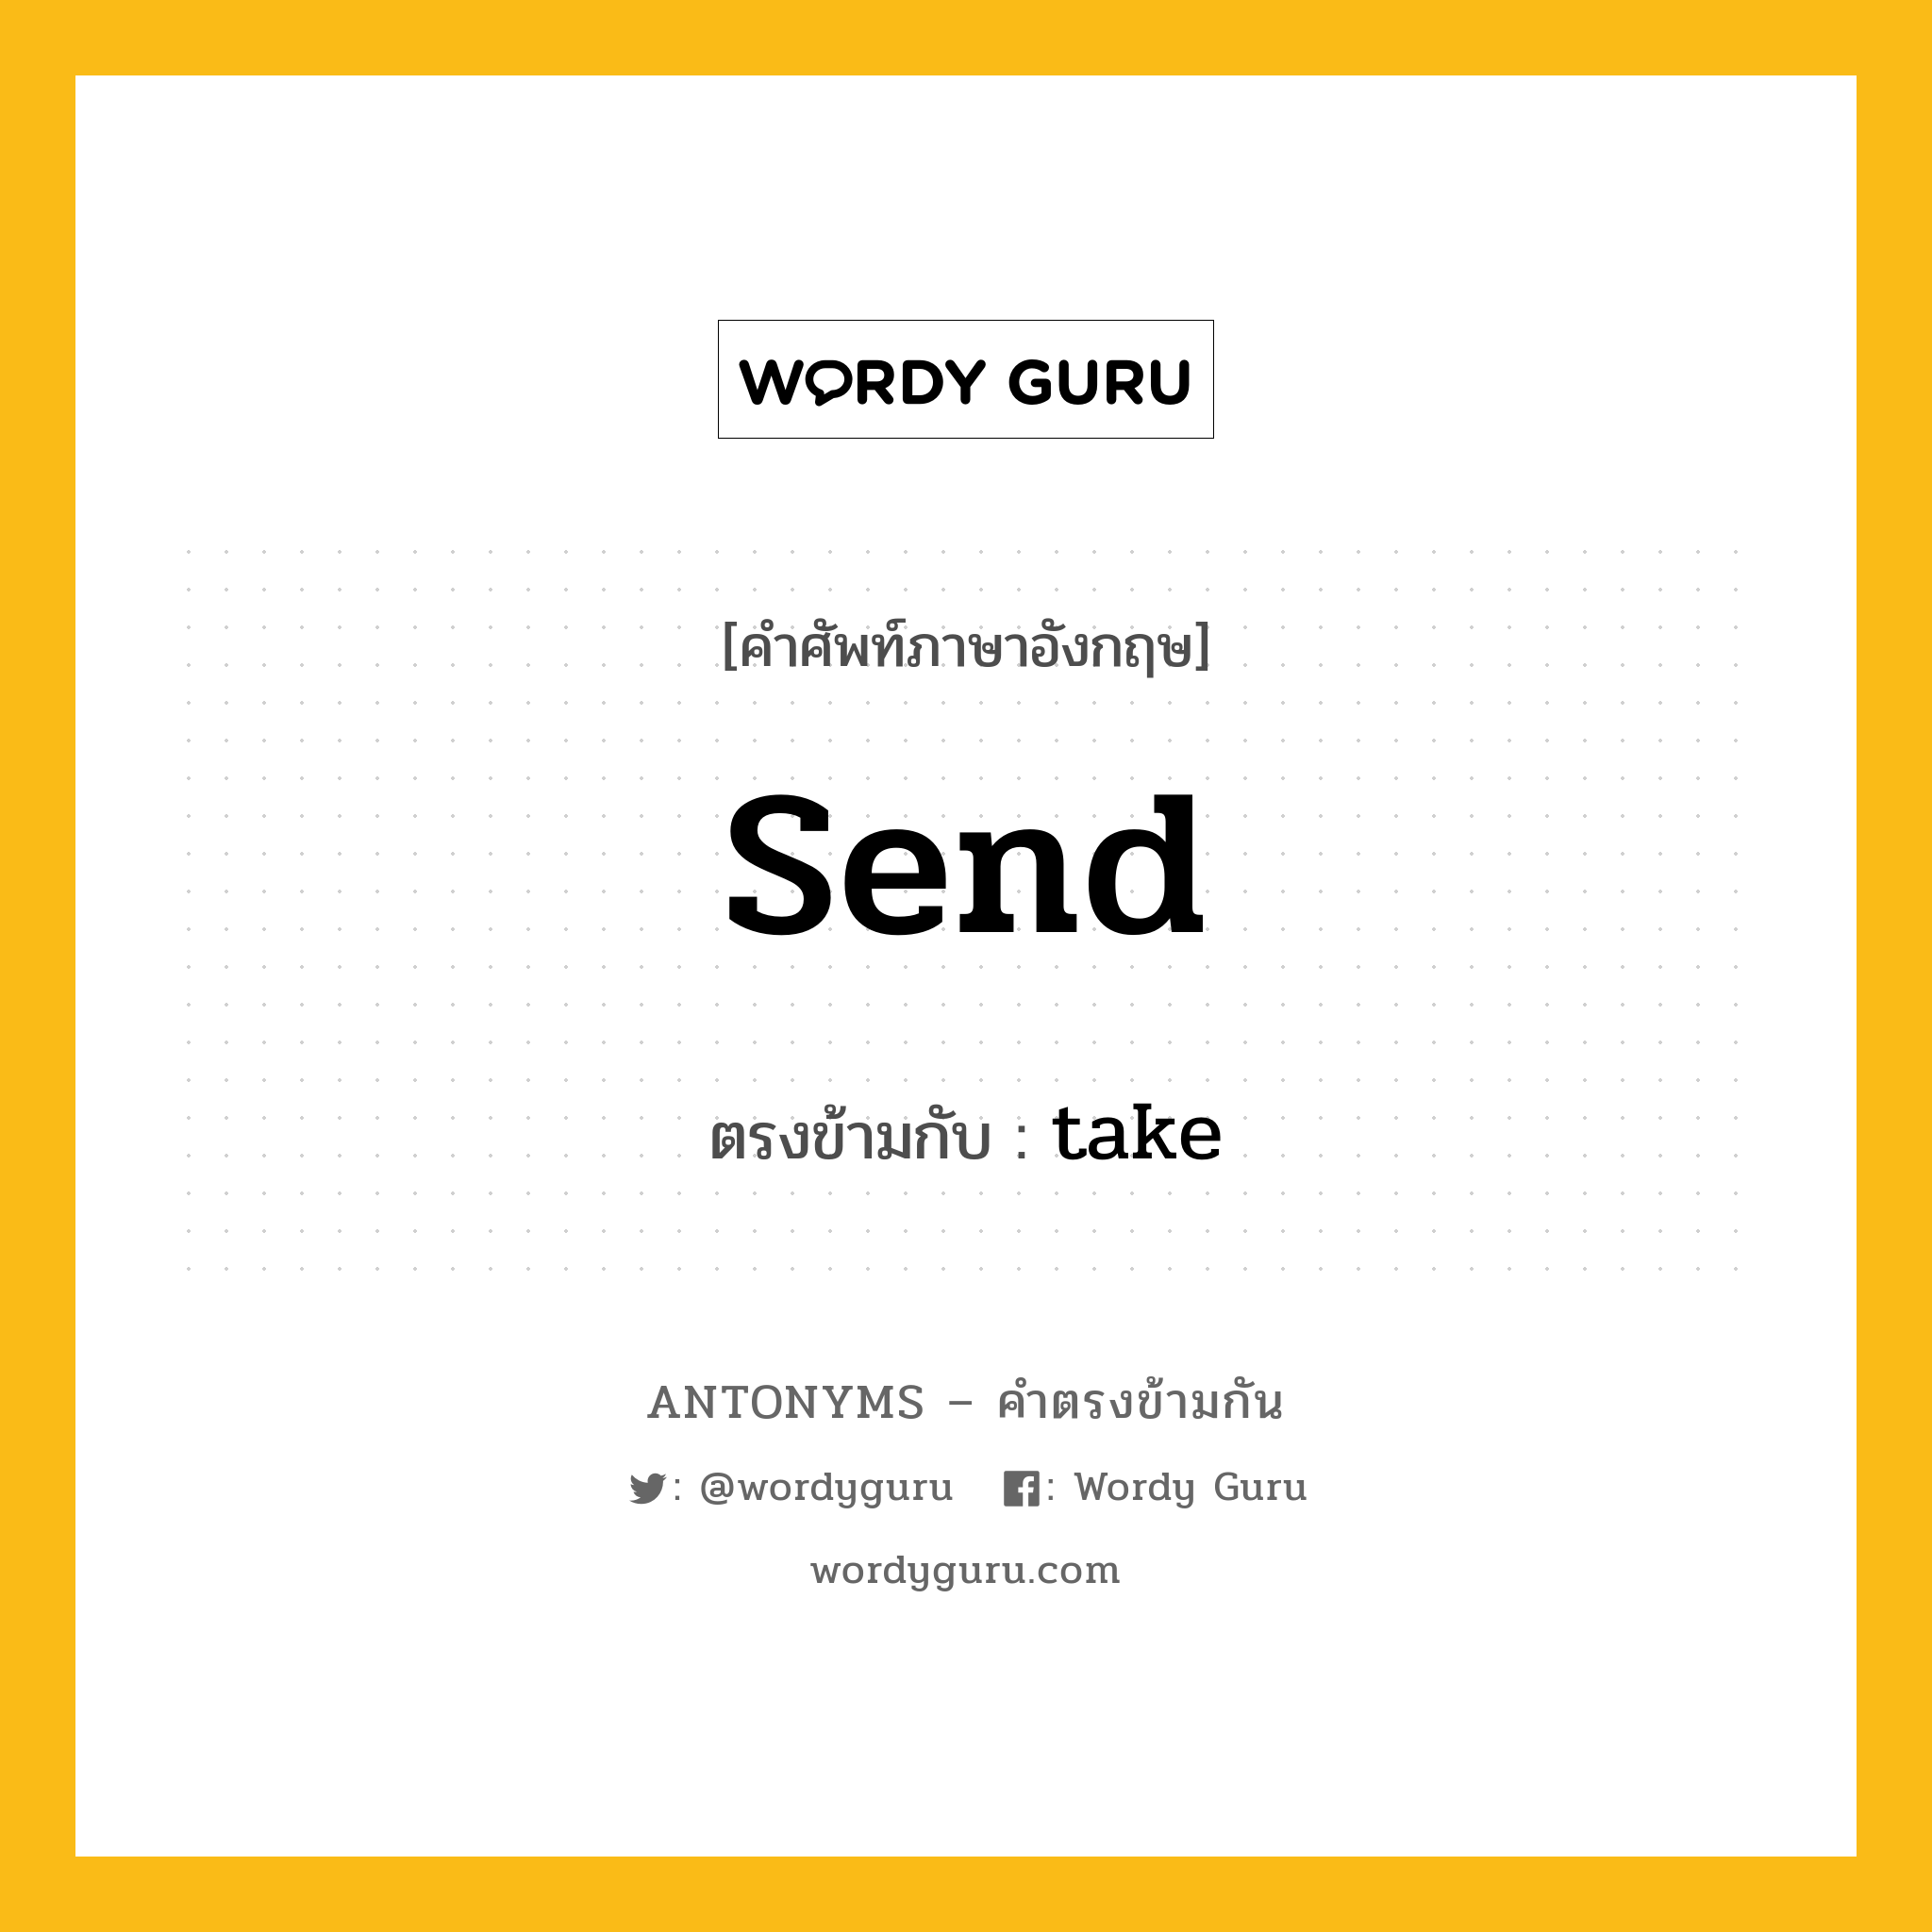 send เป็นคำตรงข้ามกับคำไหนบ้าง?, คำศัพท์ภาษาอังกฤษ send ตรงข้ามกับ take หมวด take